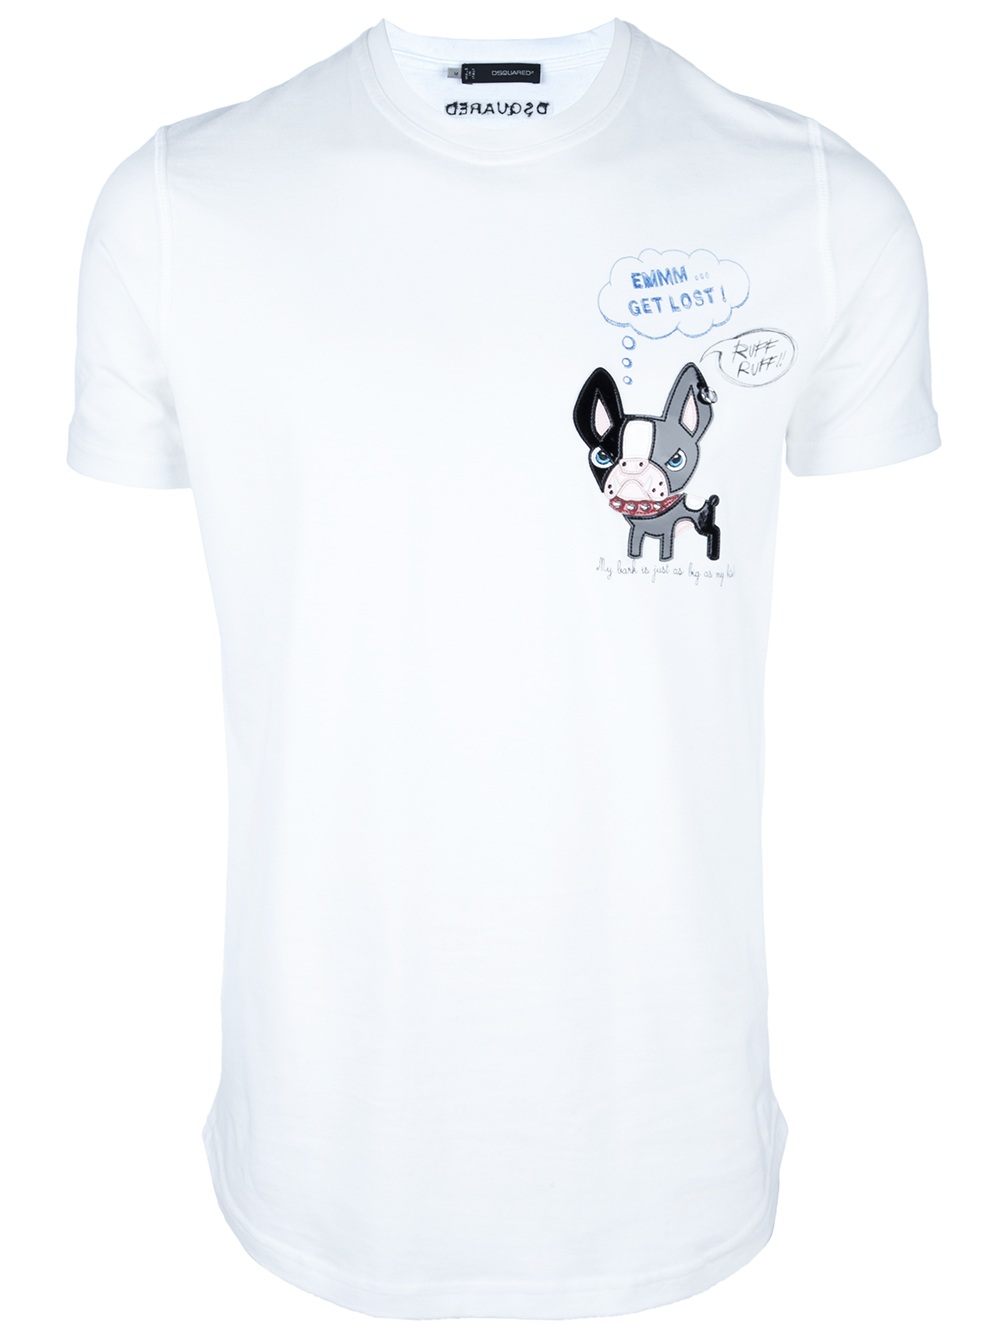 DSquared² Bulldog T-Shirt in White for Men - Lyst